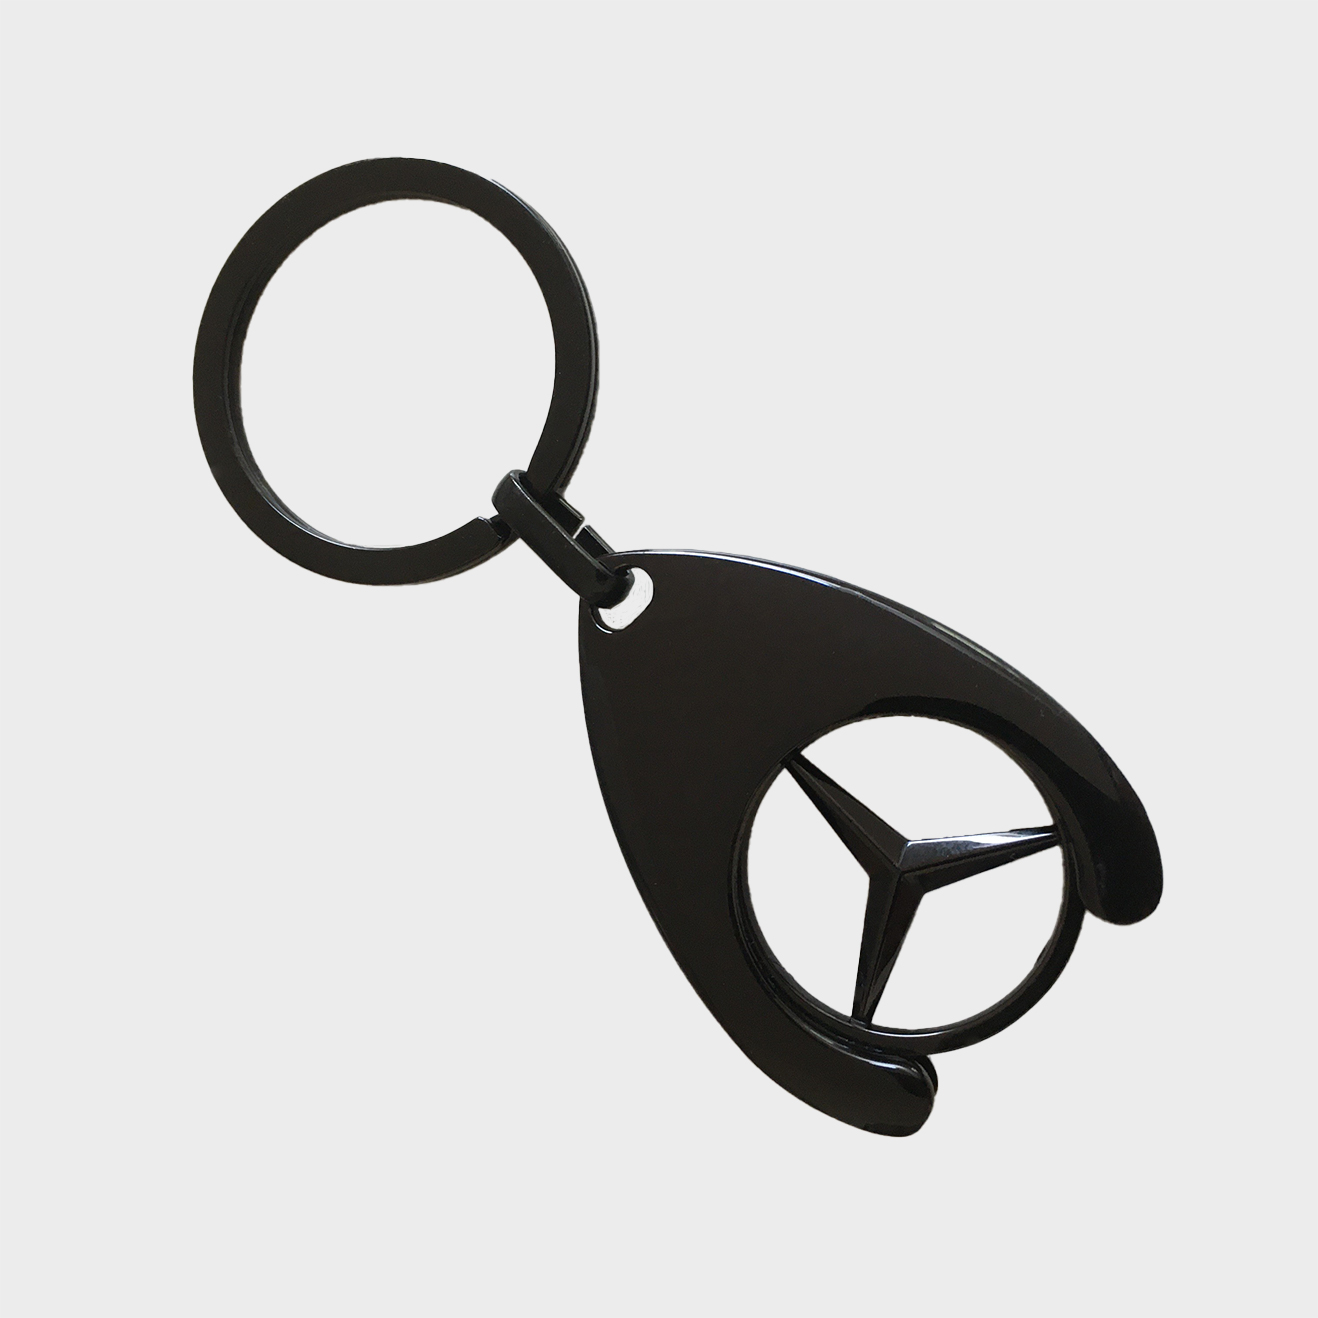 Schlüsselanhänger mit Einkaufschip, schwarz